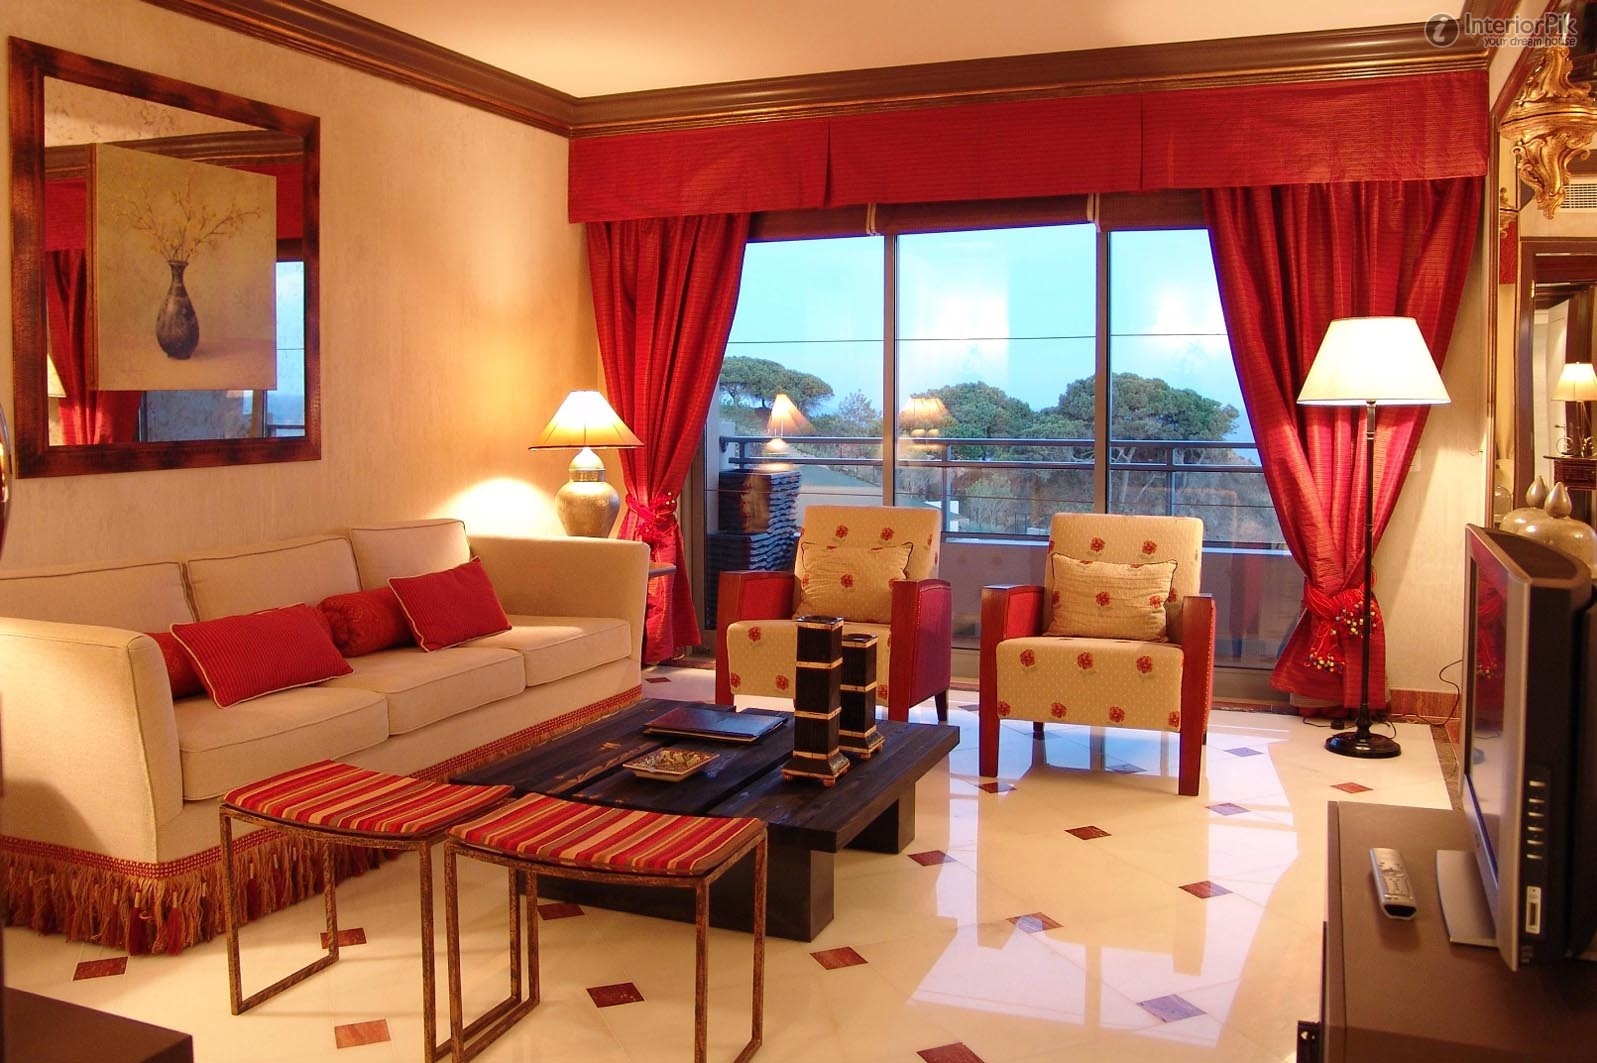 Окна украшенные красными шторами в интерьере помещения